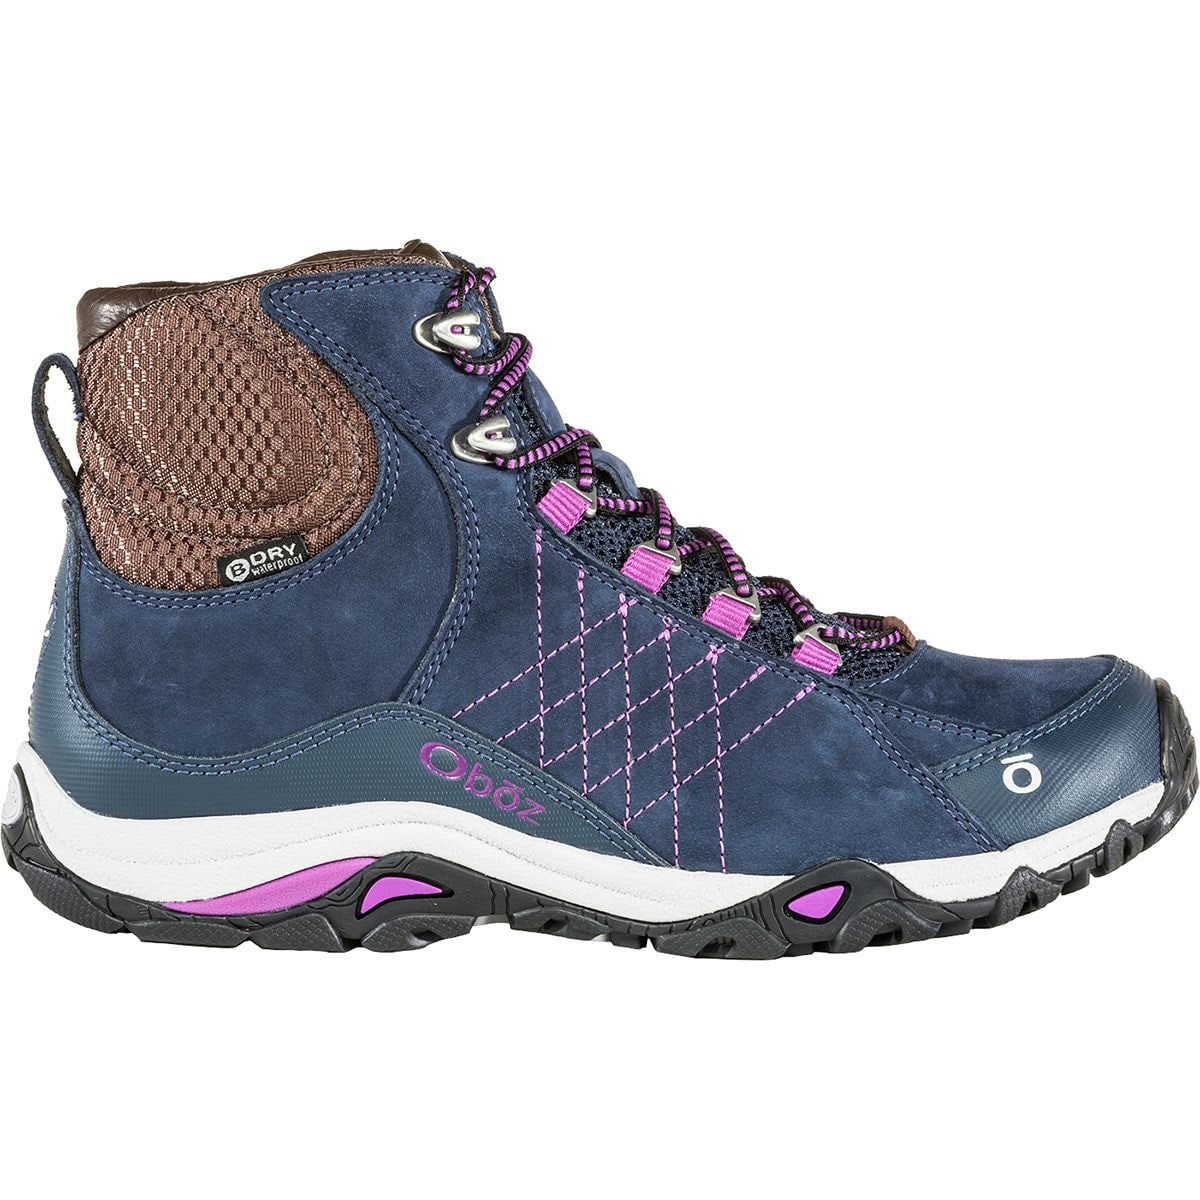 Sapphire Mid B-Dry Hiking Boot - Women